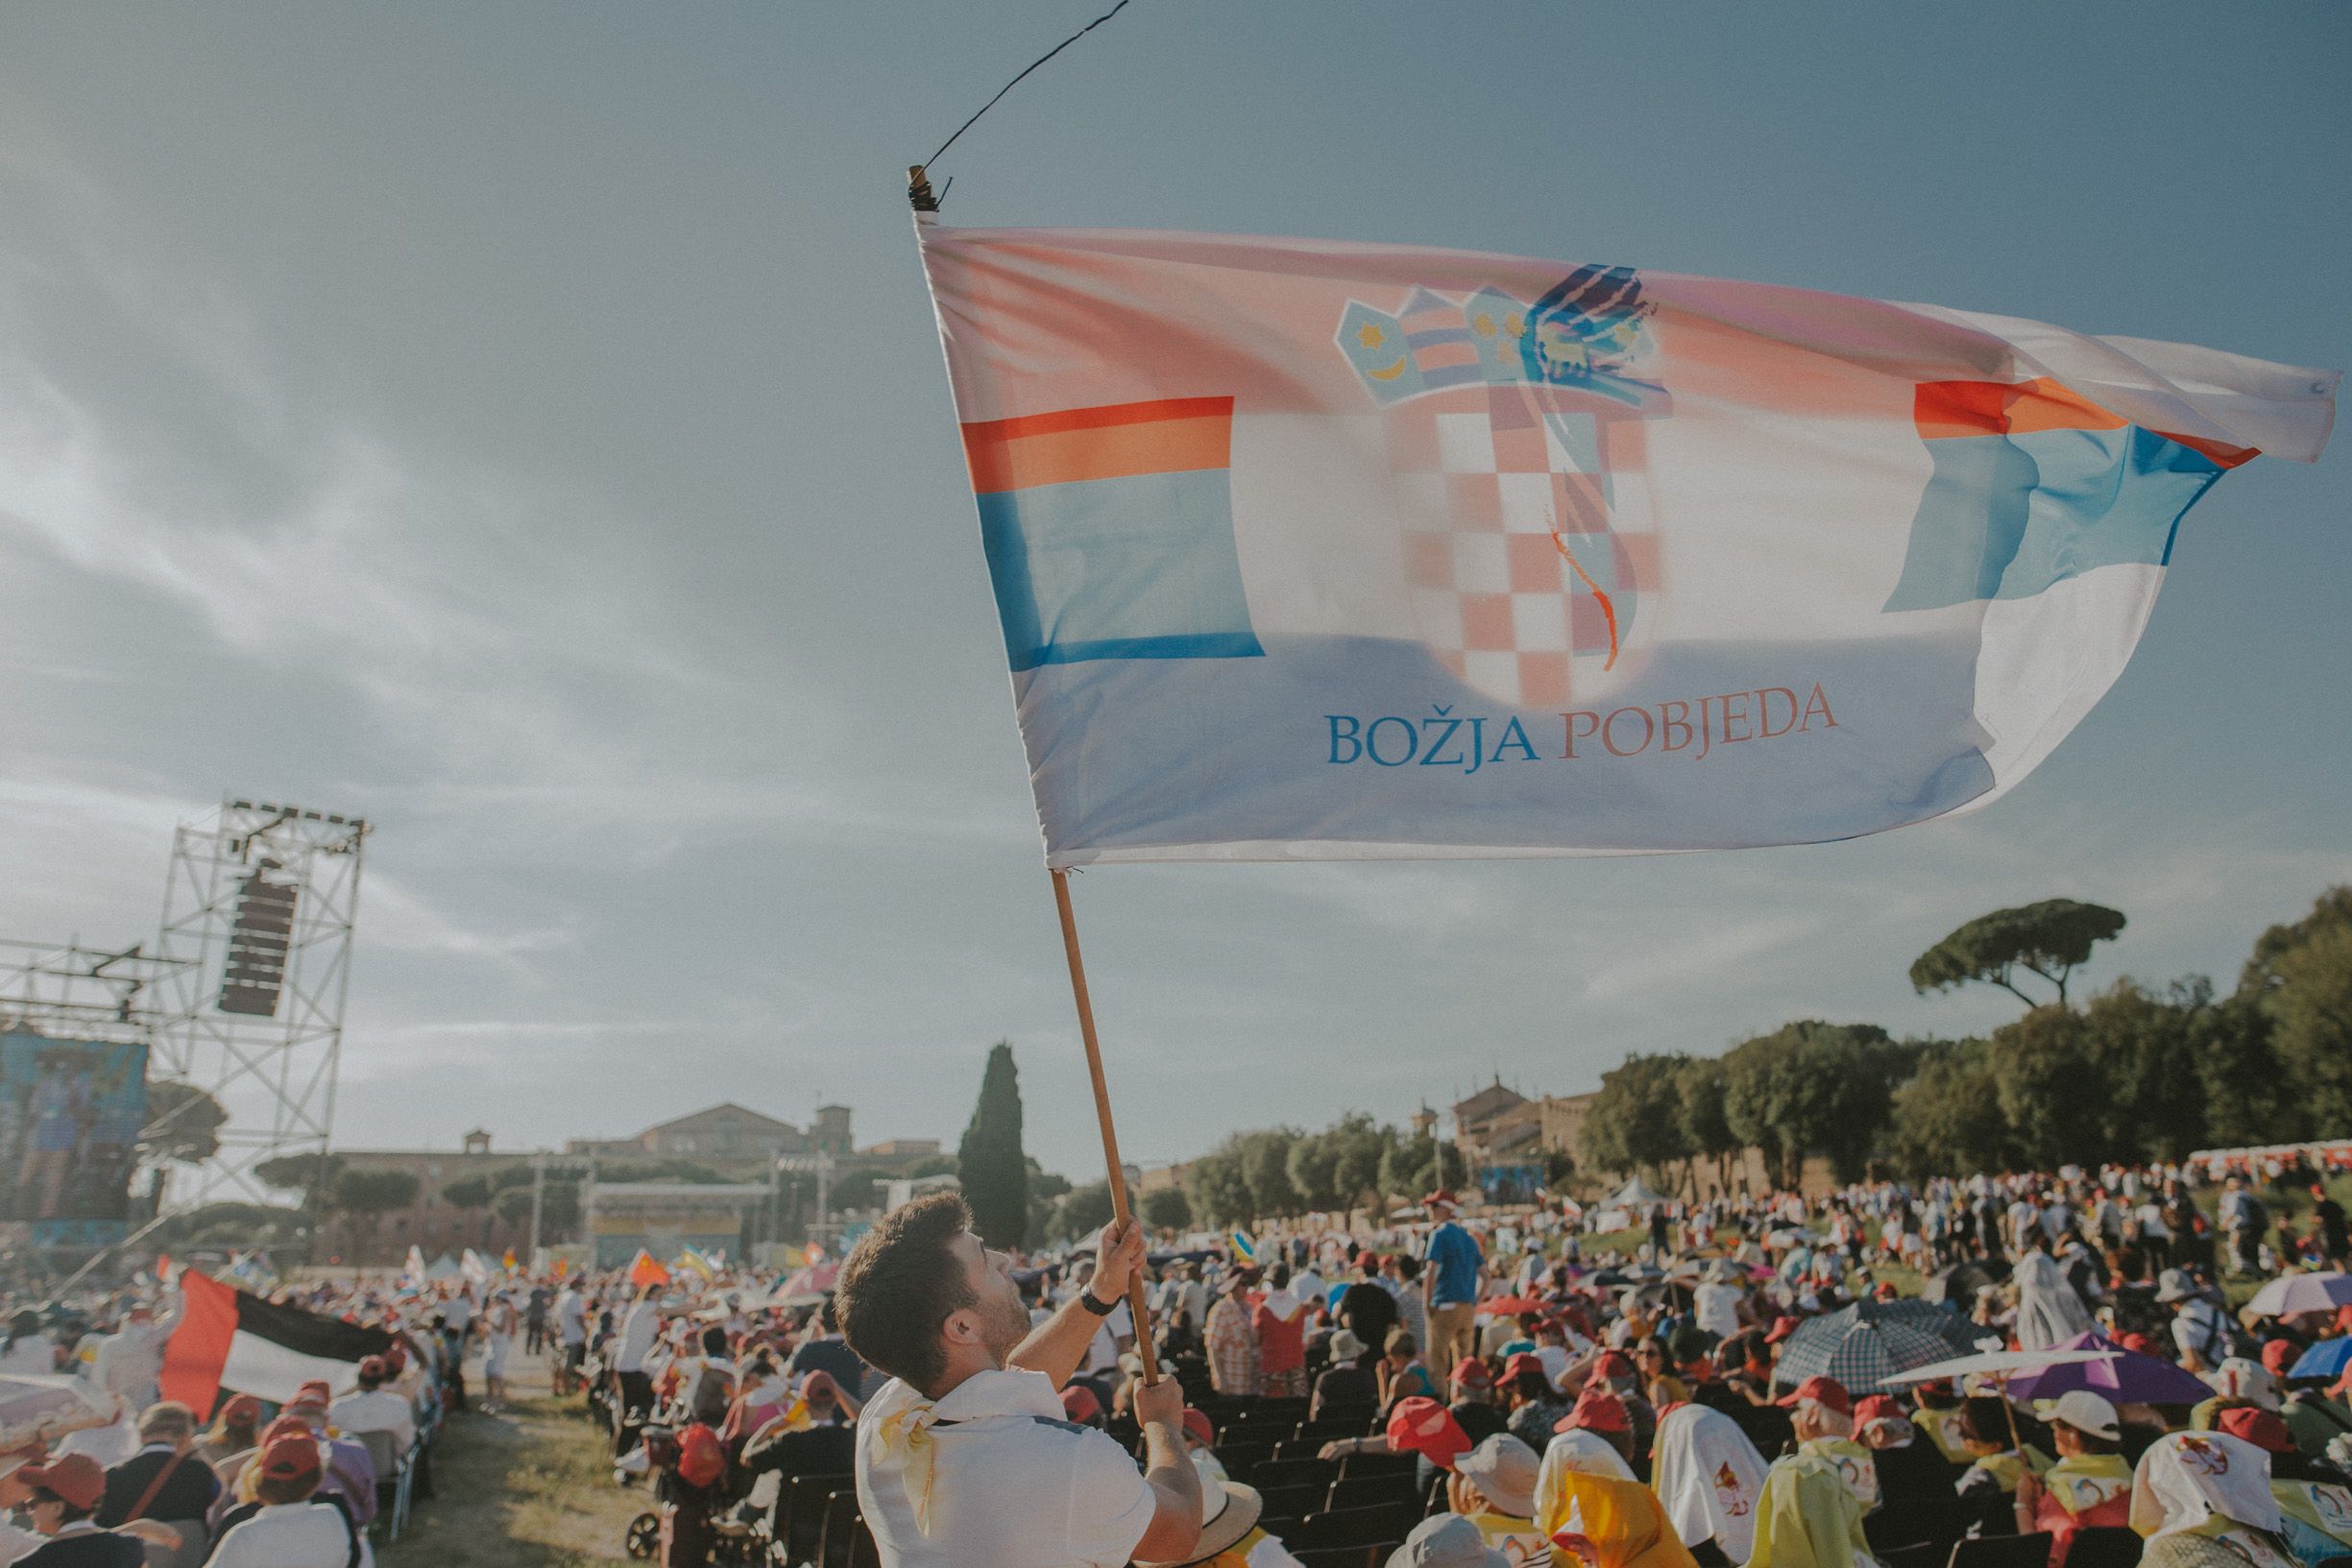 Molitva za pravednu i slobodnu Hrvatsku